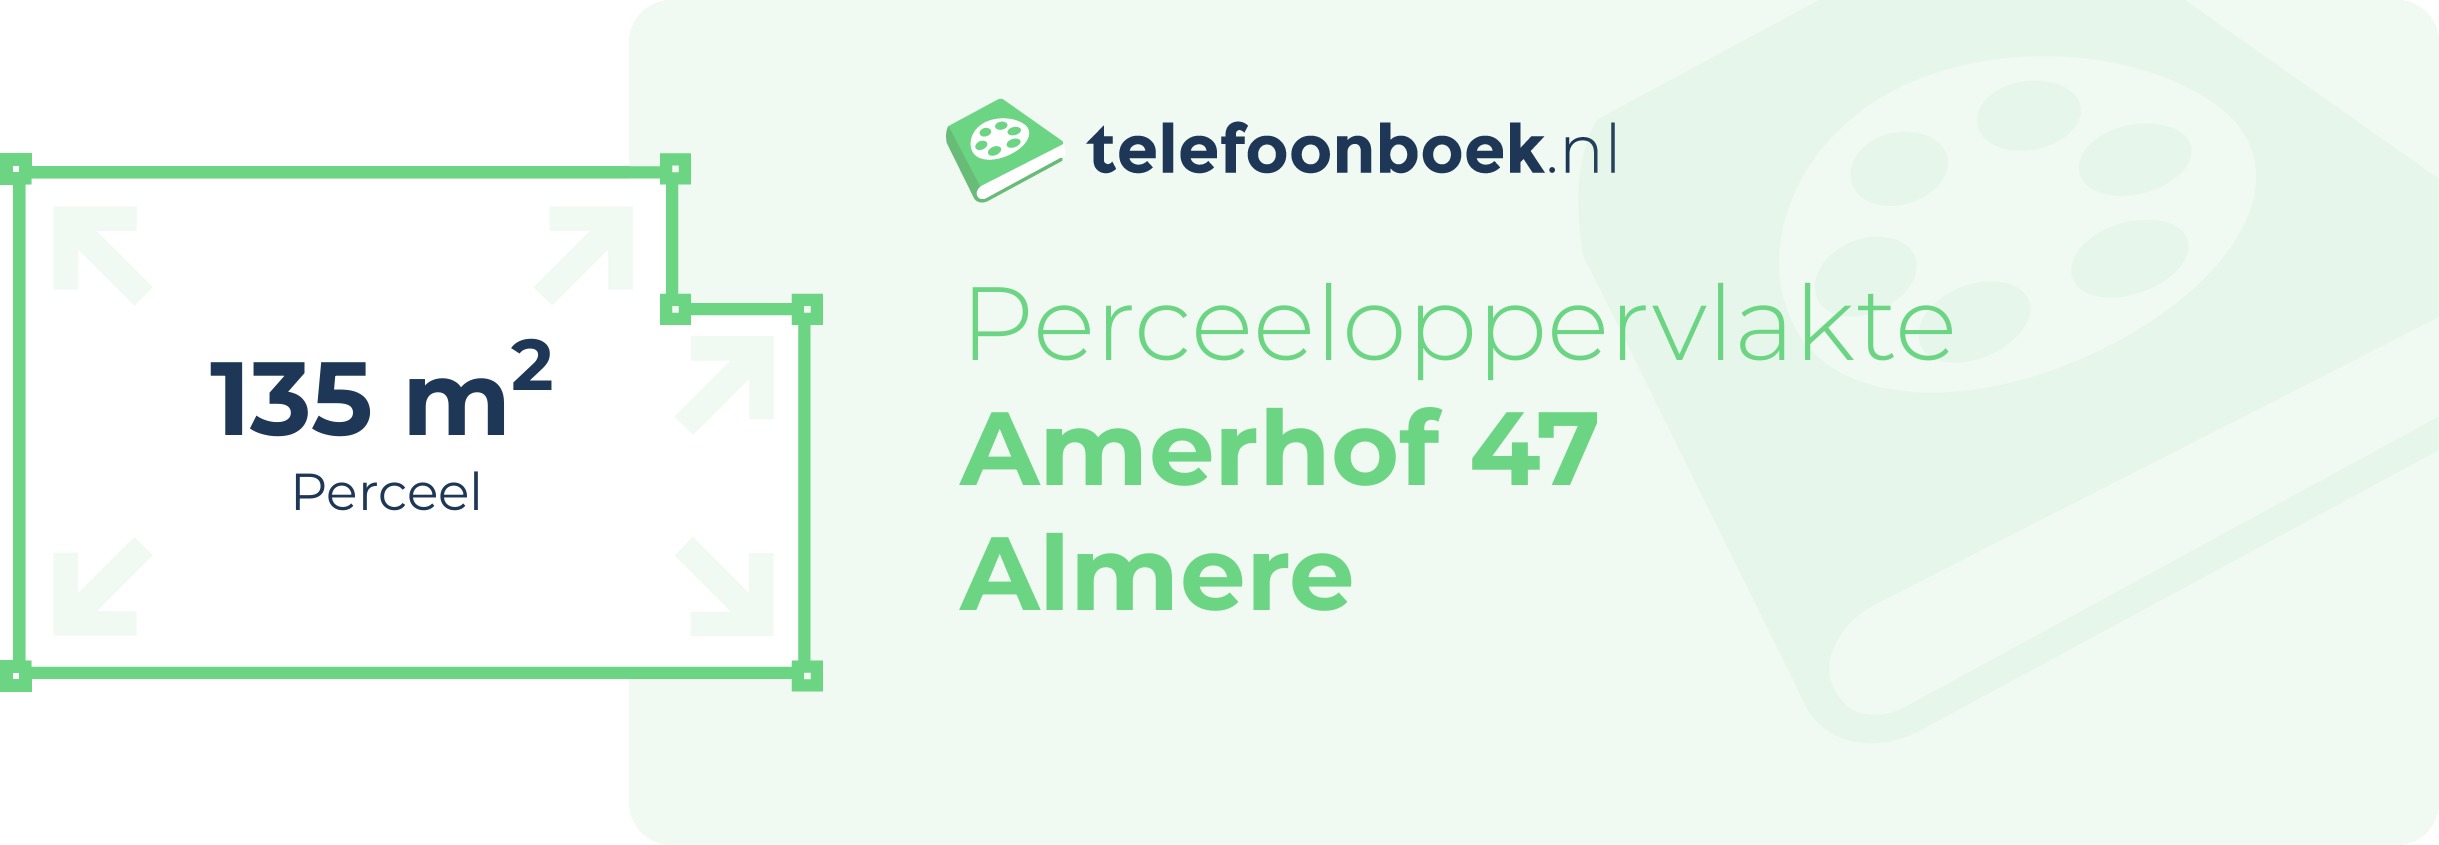 Perceeloppervlakte Amerhof 47 Almere